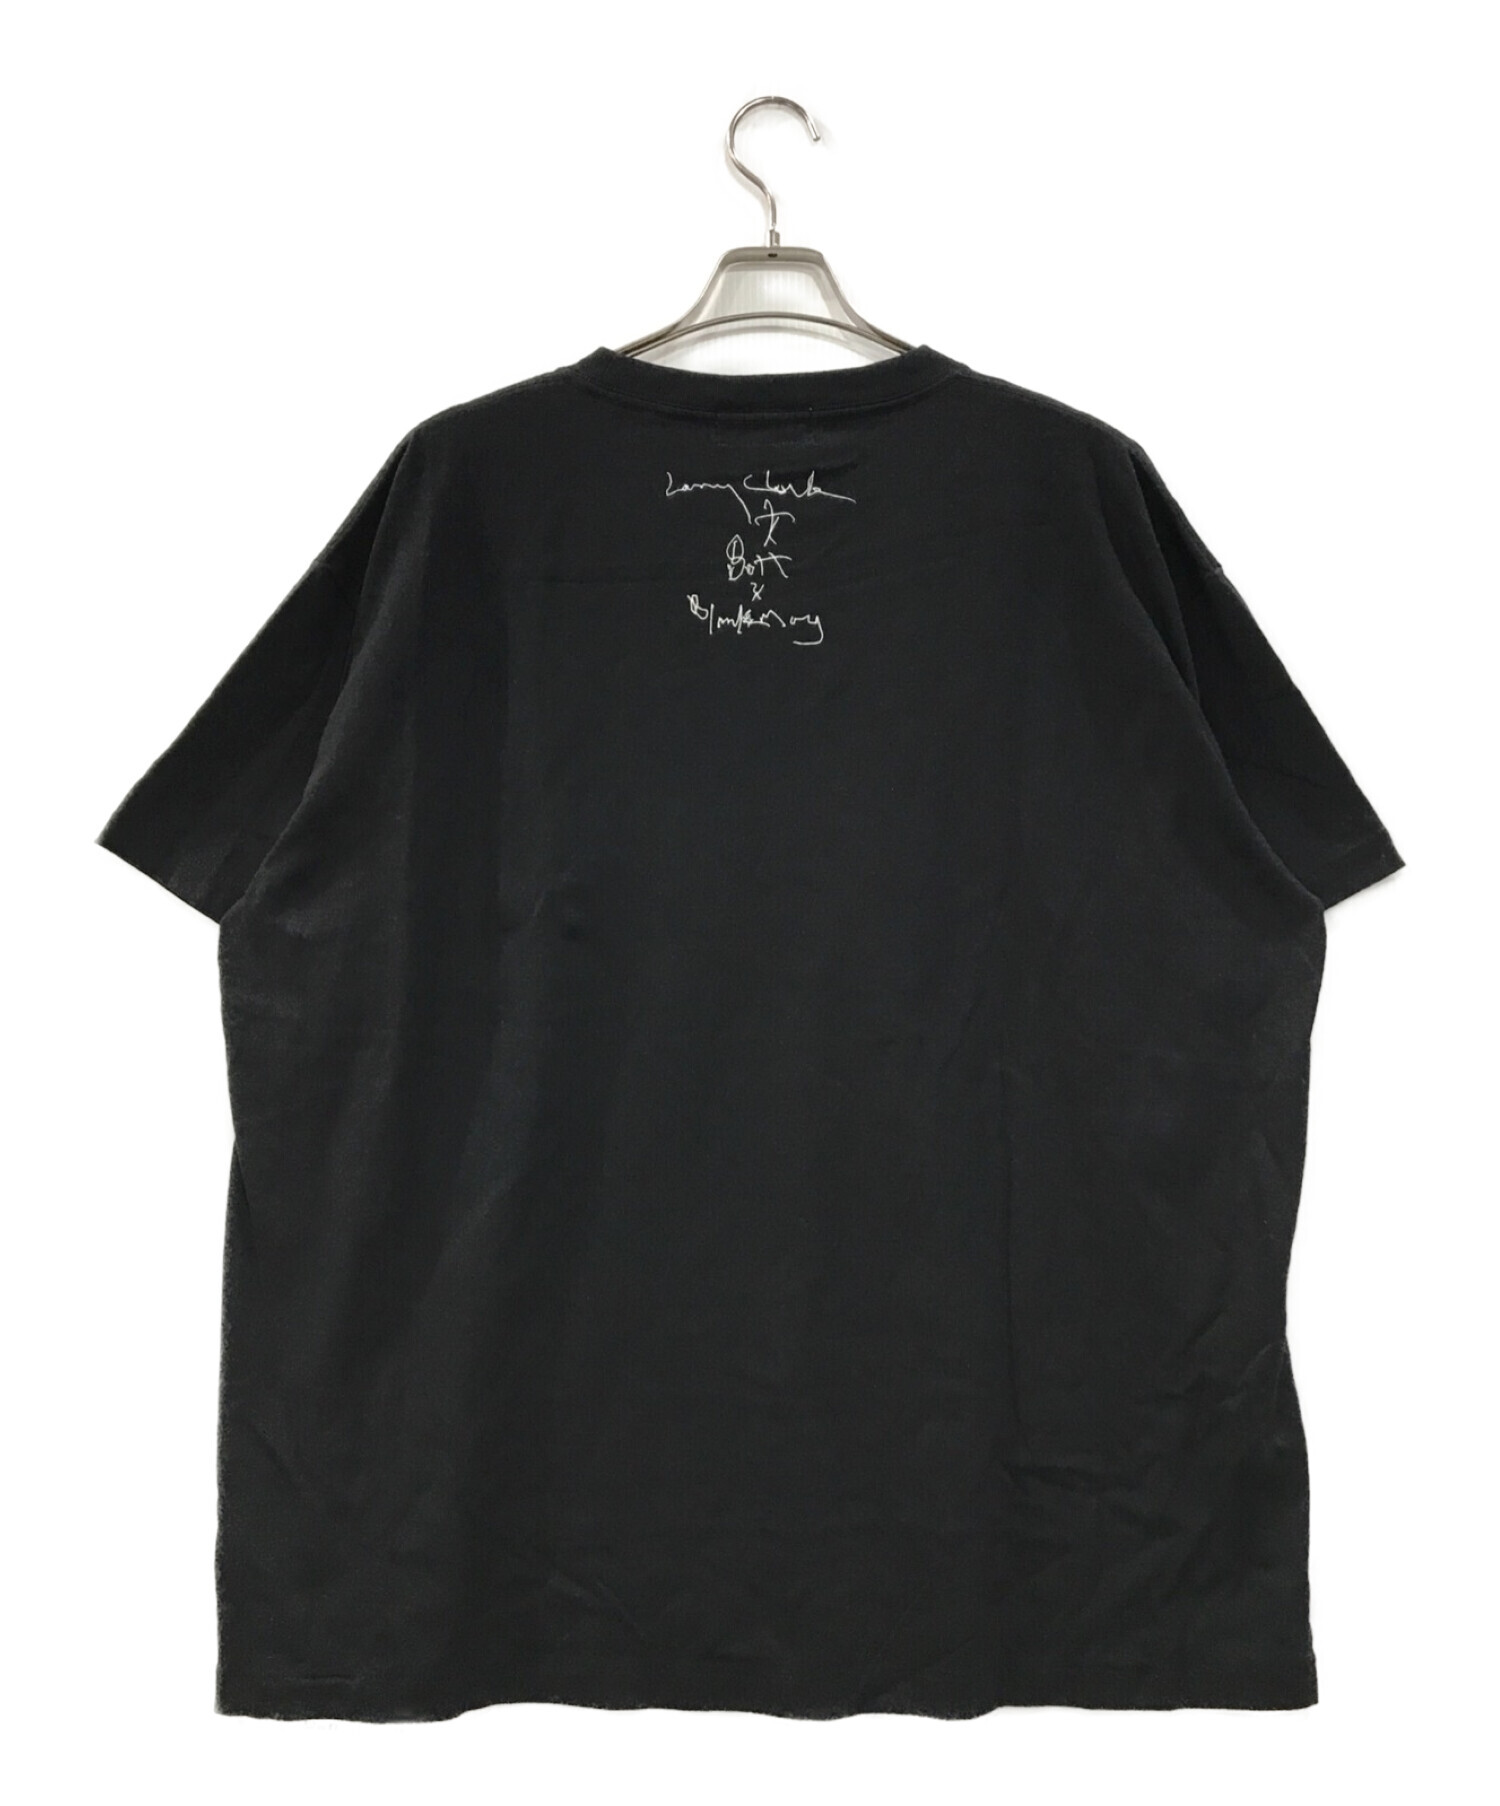 THE BOTT Larry Clark blankmag kids TEE - Tシャツ/カットソー(半袖